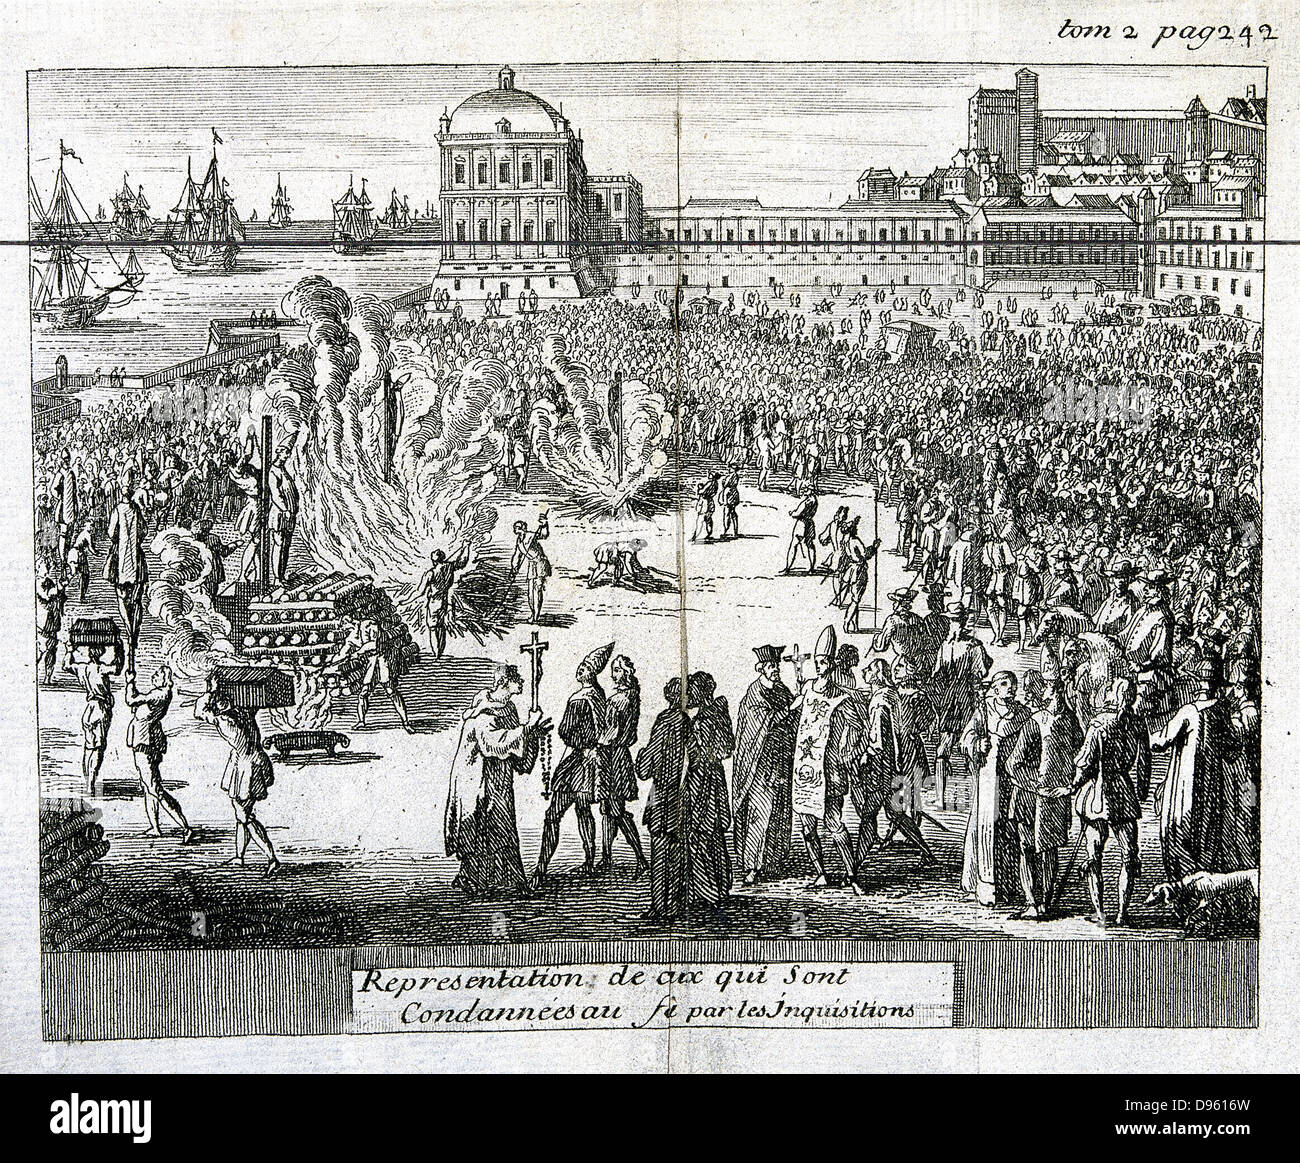 Brûler des hérétiques condamnés par l'Inquisition. La gravure sur cuivre, 1759 Cologne publié. Collection privée Banque D'Images